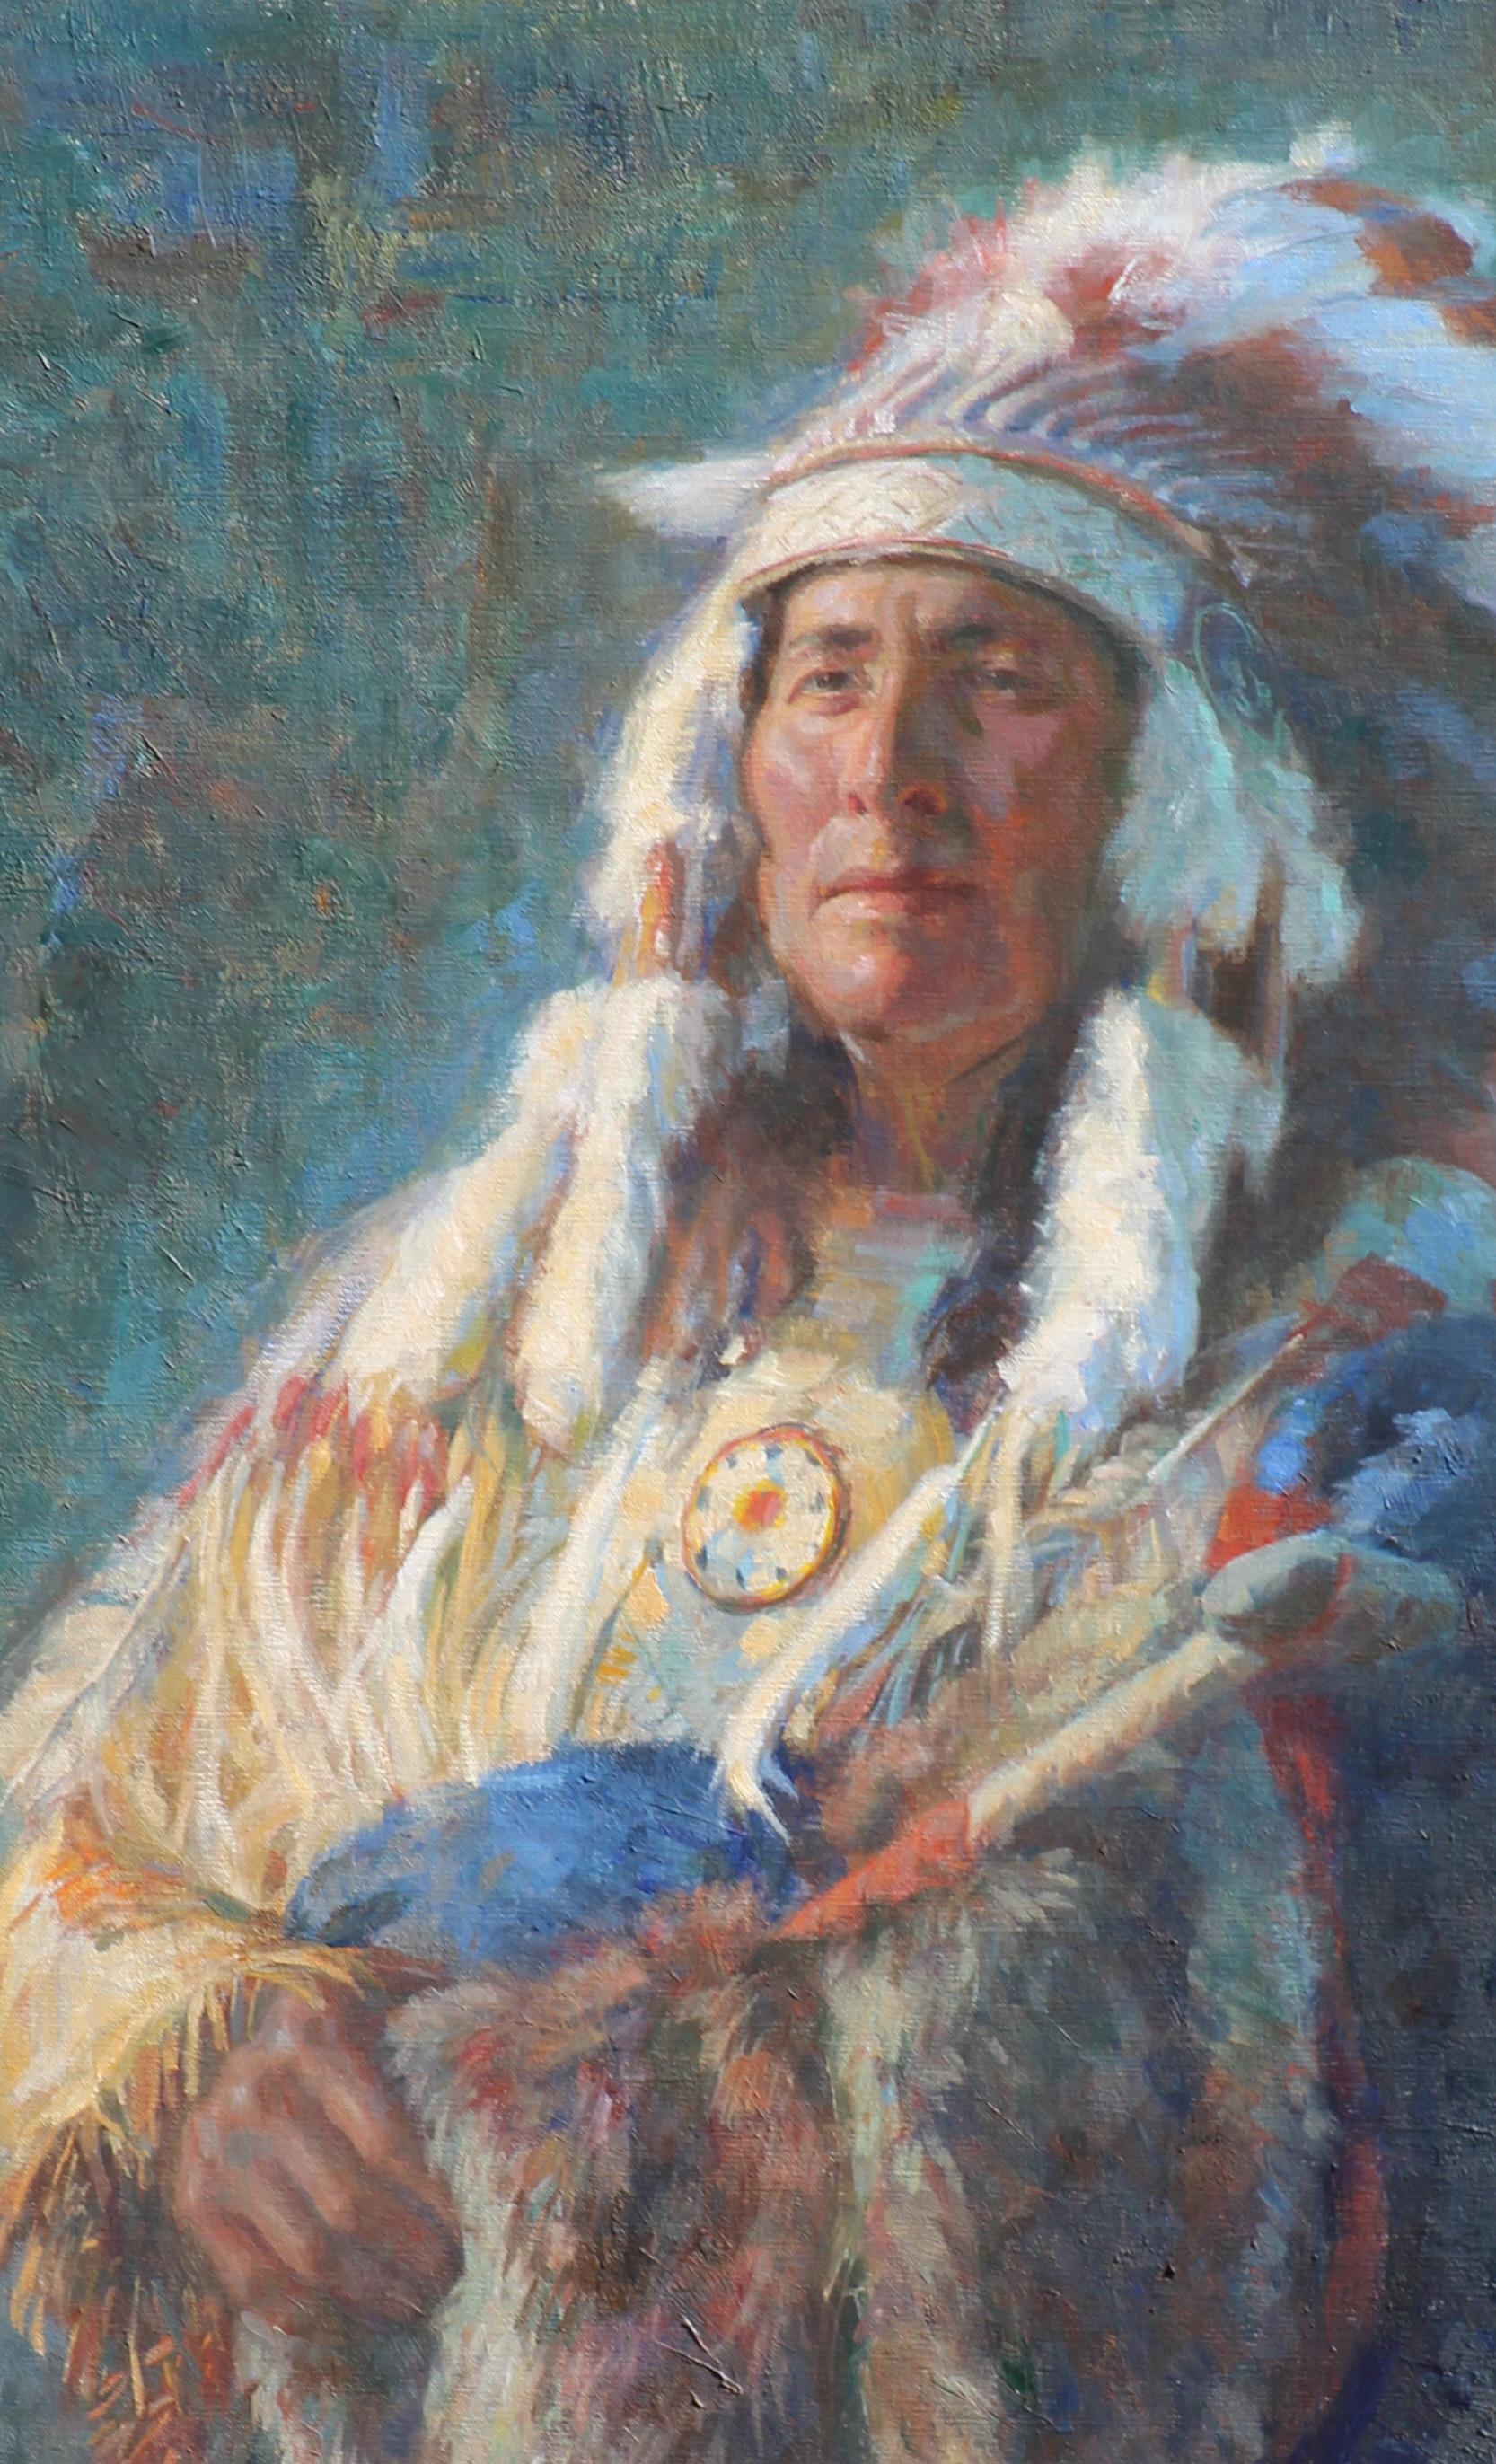 White Eagle représente un Indien d'Amérique du Nord dans cette peinture à l'huile de l'artiste texan William Kalwick... Les Indiens d'Amérique sont connus pour leurs tissus brillants et colorés  et les coiffures qui sont faites à la main.  Chaque